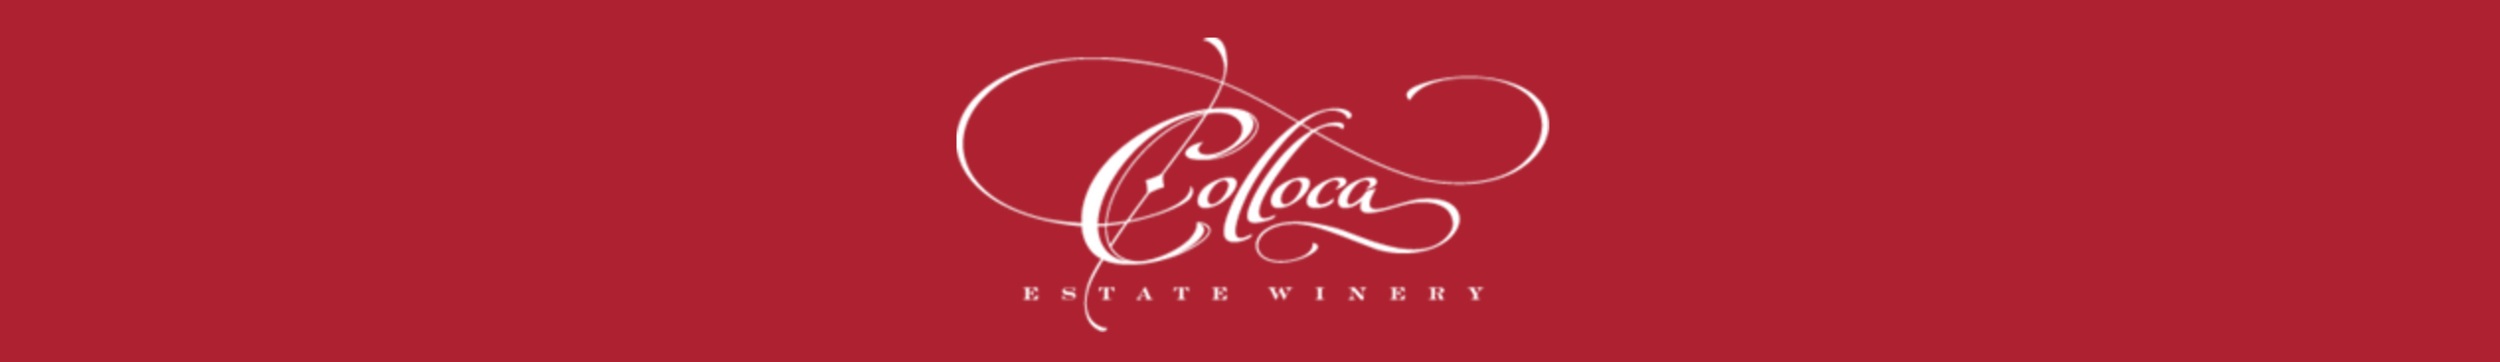 Colloca Estate Winery